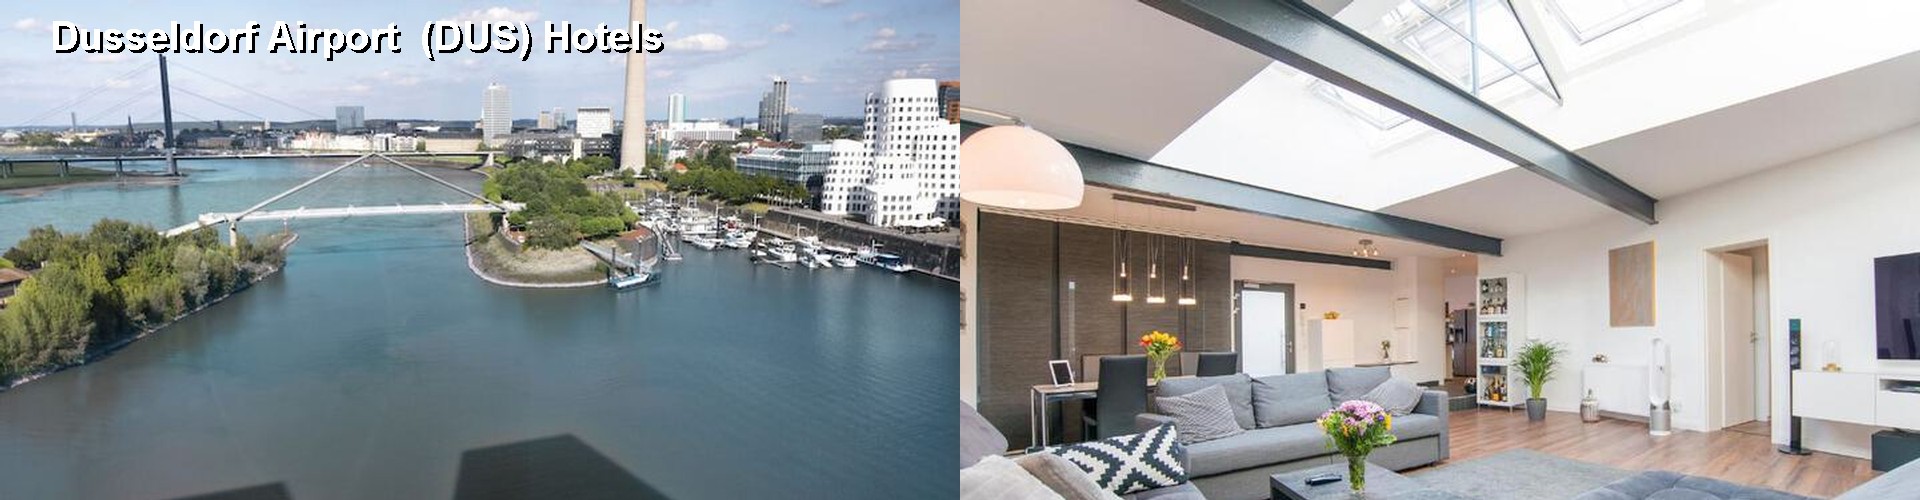 5 Best Hotels near Dusseldorf Airport  (DUS)